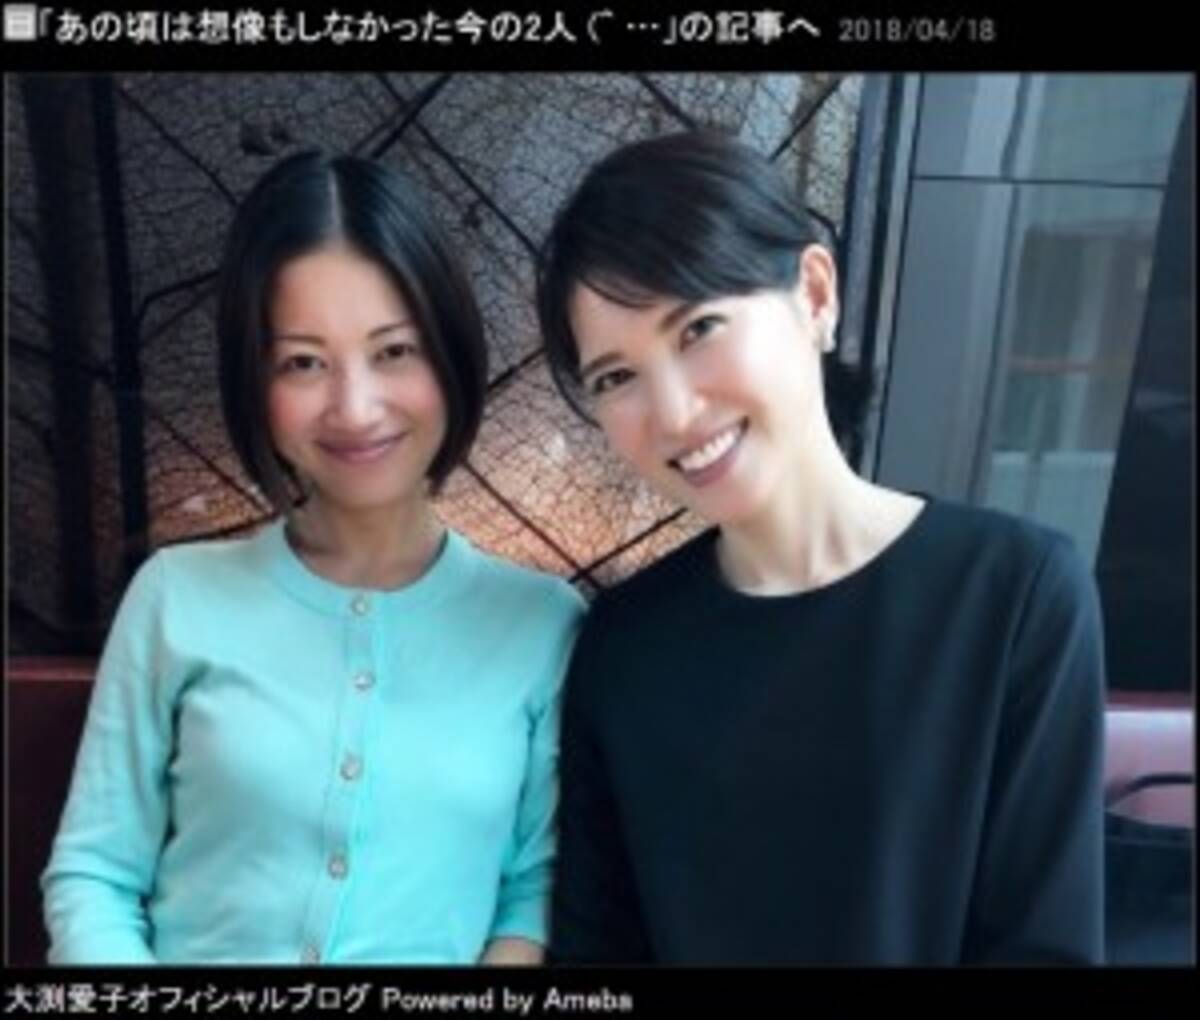 大渕愛子と友利新 再婚して2児の母に 5年前は想像すらしなかった と感慨深げ 18年4月日 エキサイトニュース